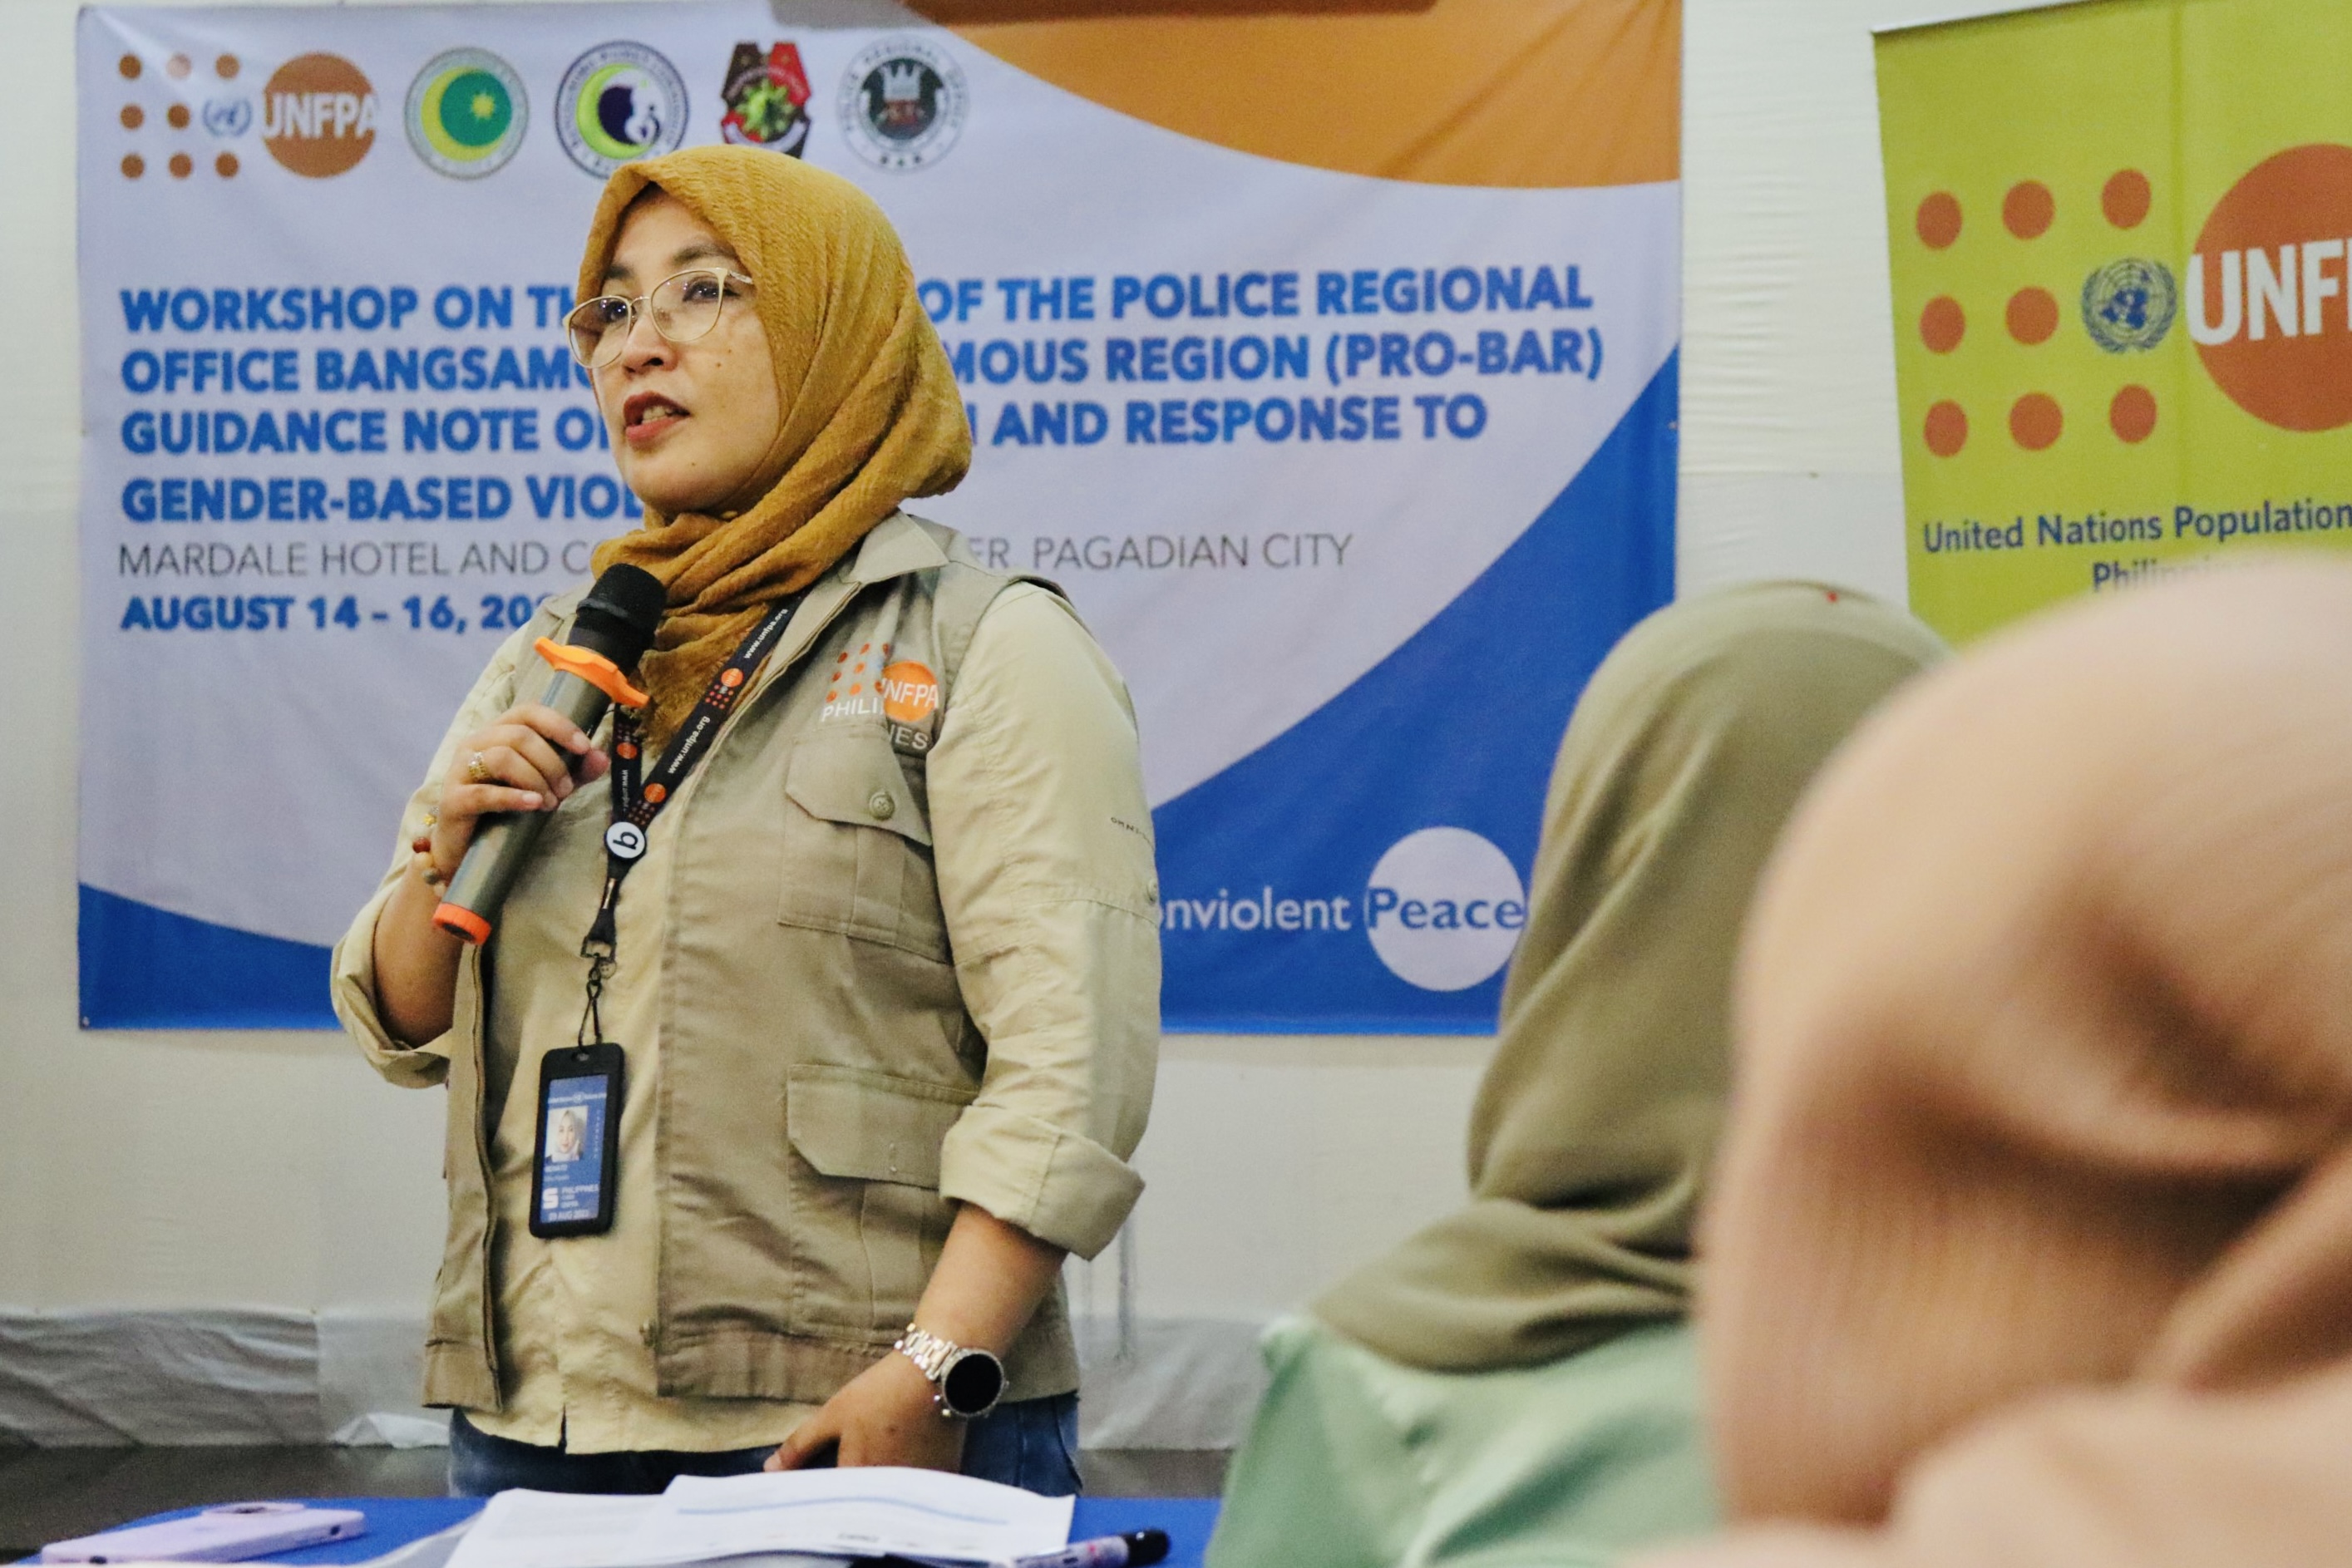 Workshop on Police Guidance Note on Prevention of Gender-based Violence in BARMM